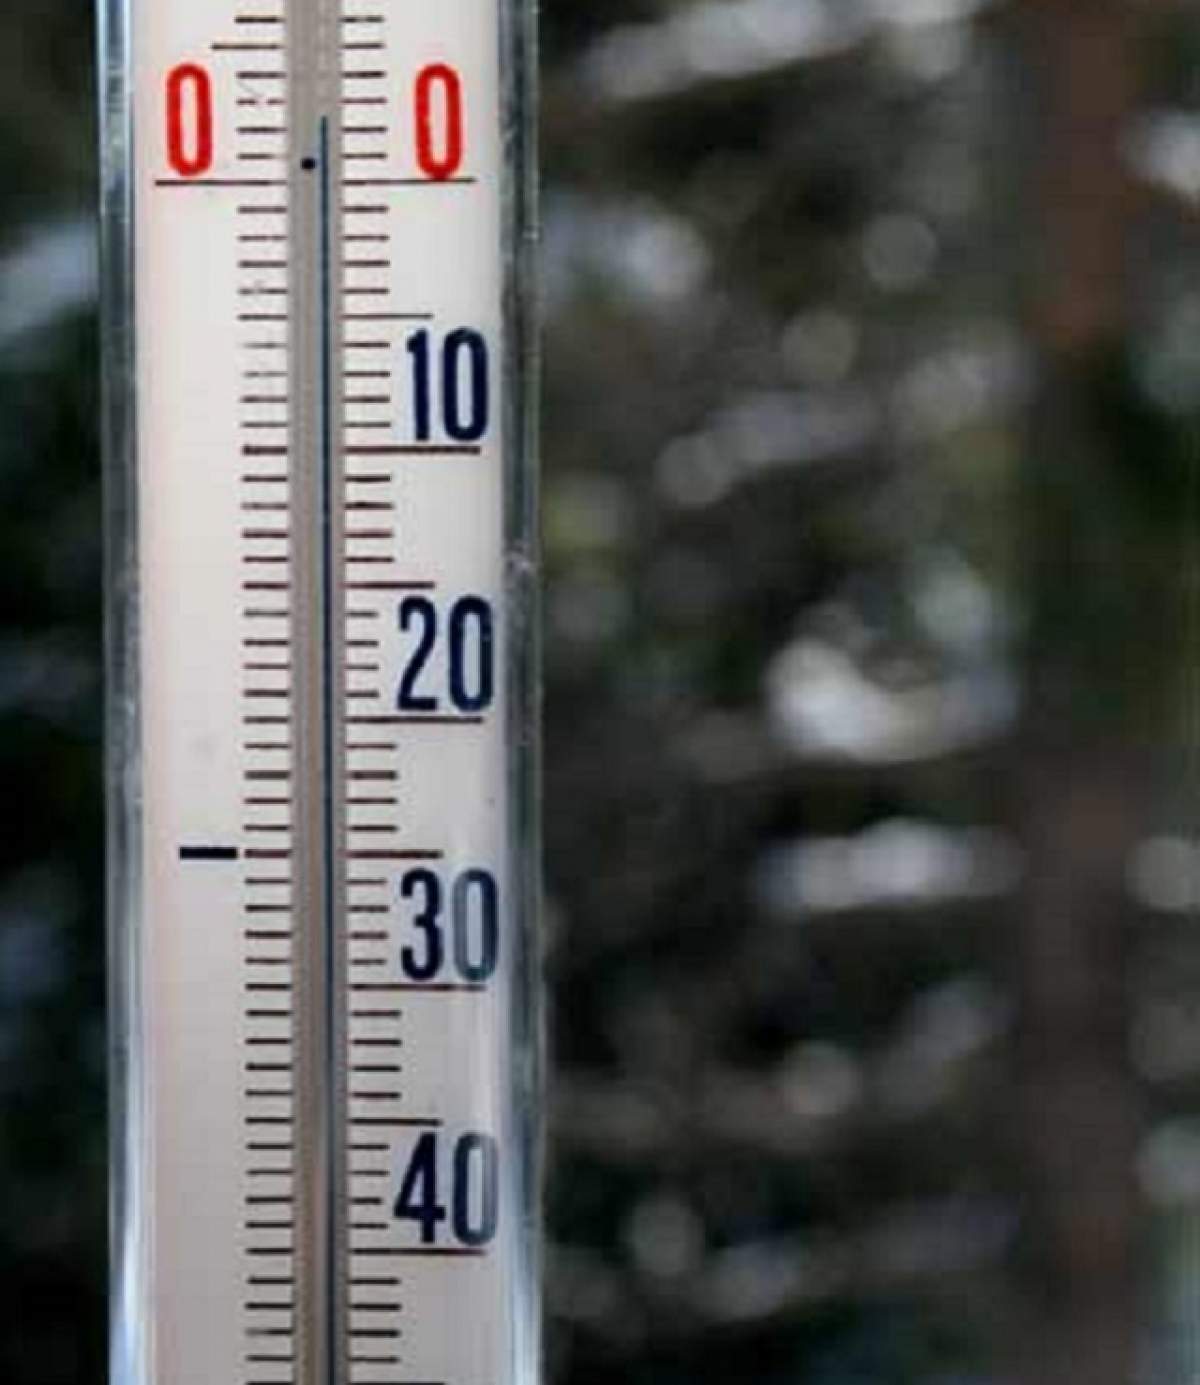 Minimă de 0,9 grade, în România! Unde s-a înregistrat cea mai scăzută temperatură din această vară